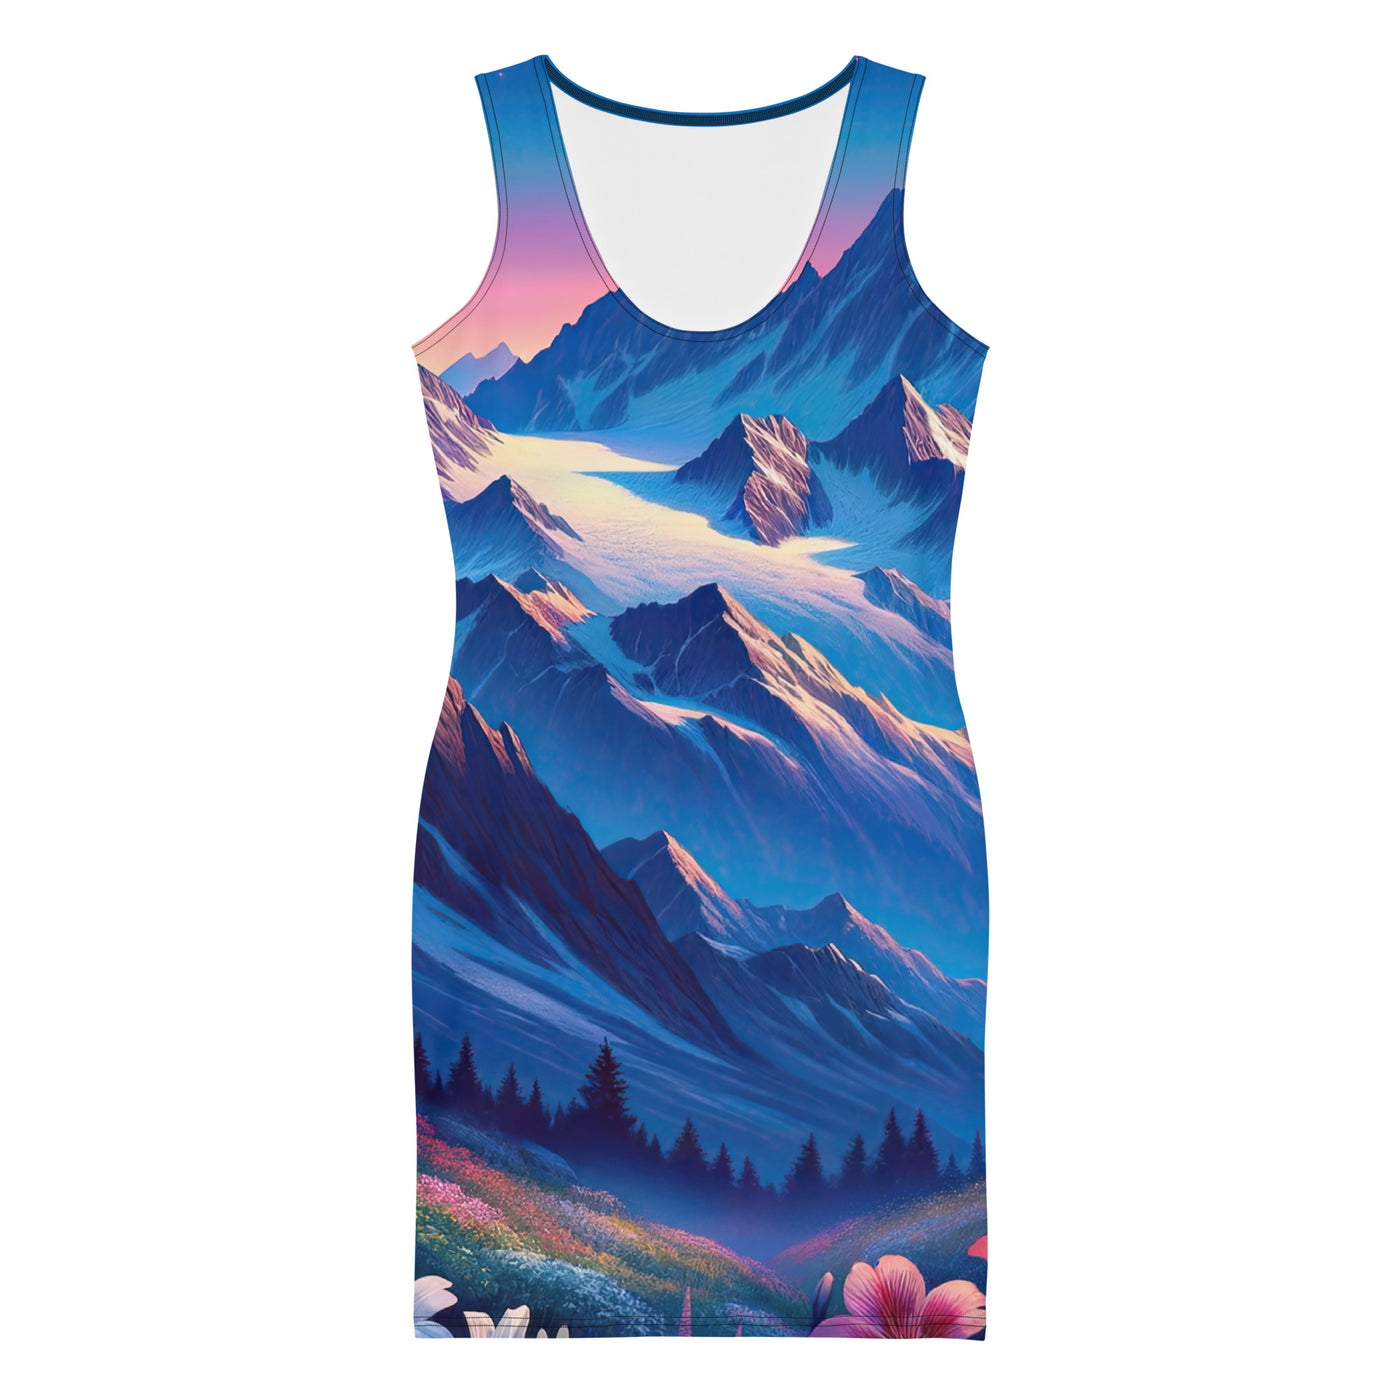 Steinbock bei Dämmerung in den Alpen, sonnengeküsste Schneegipfel - Langes Damen Kleid (All-Over Print) berge xxx yyy zzz XL